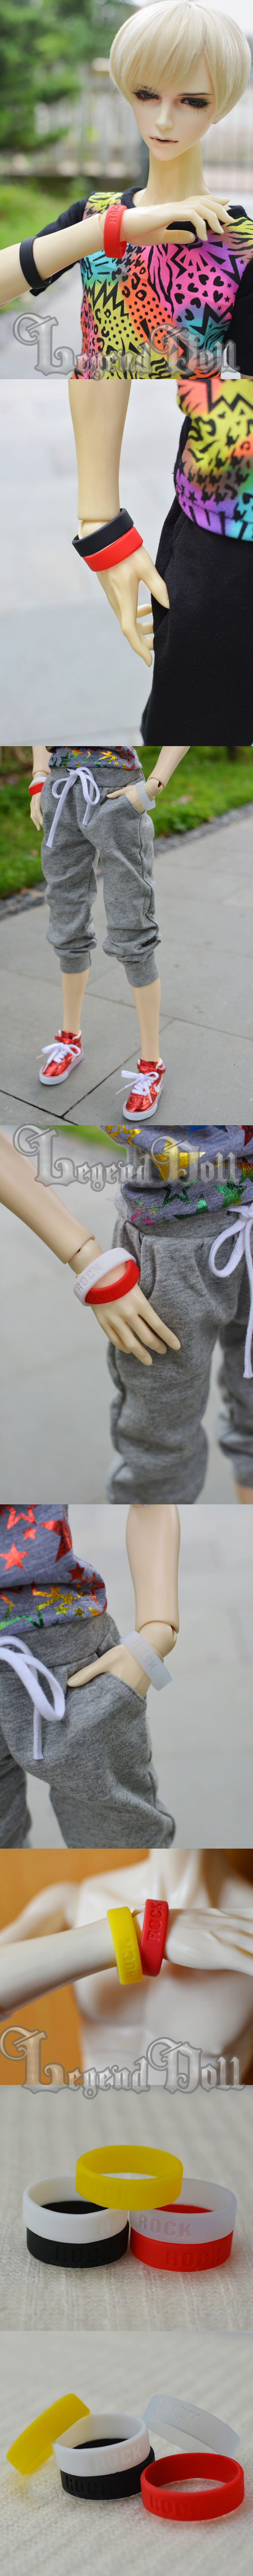 人形アイテム 70CM/SDサイズ人形用 シリコン腕輪 五色あり 